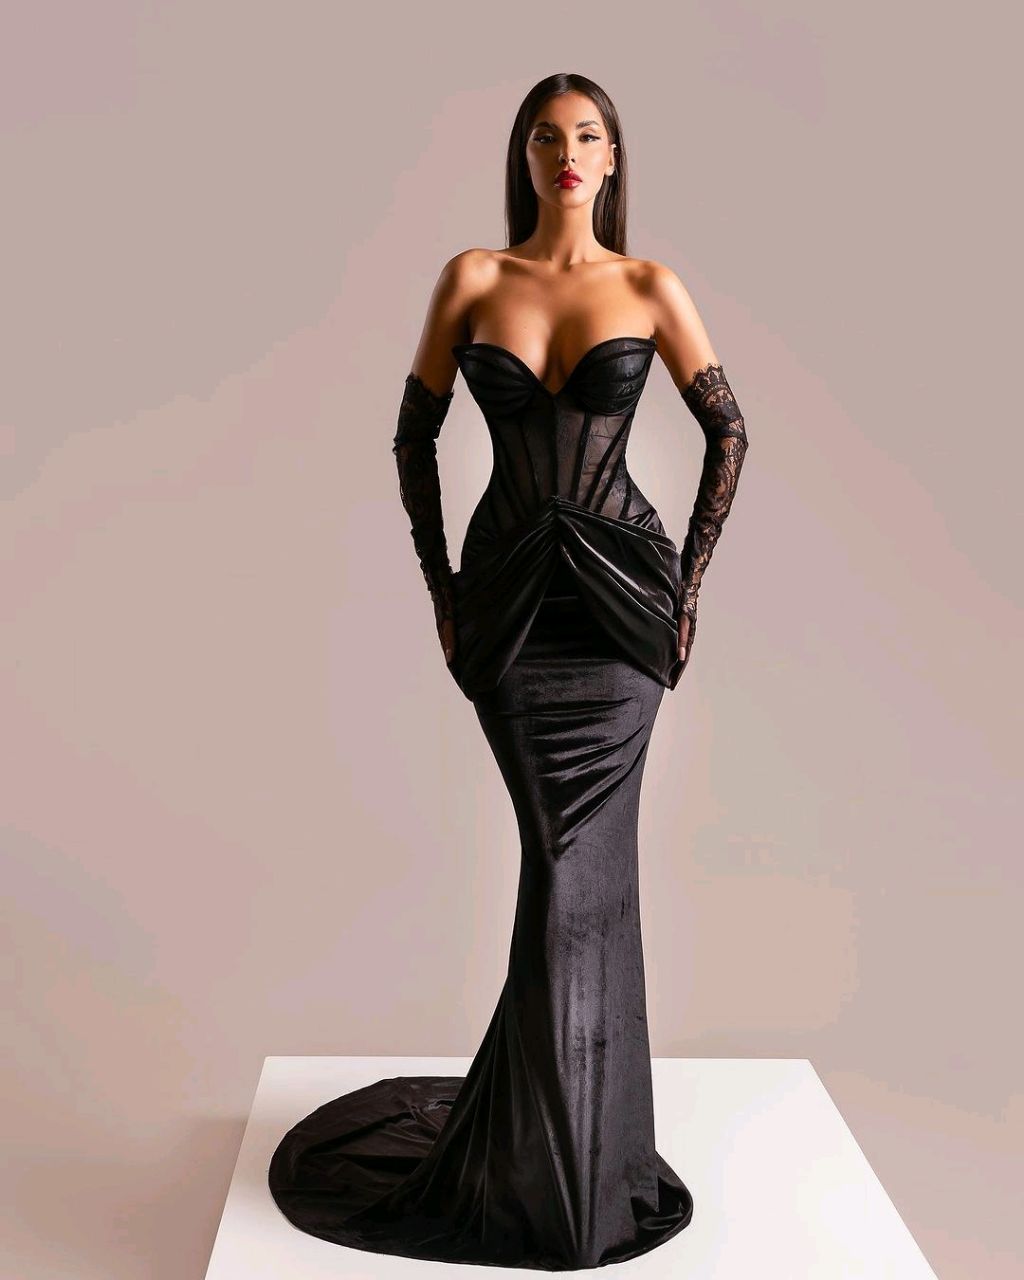 Oknass Glamorous Black Strapless Sleeveless Mermaid Prom Dress with Gloves